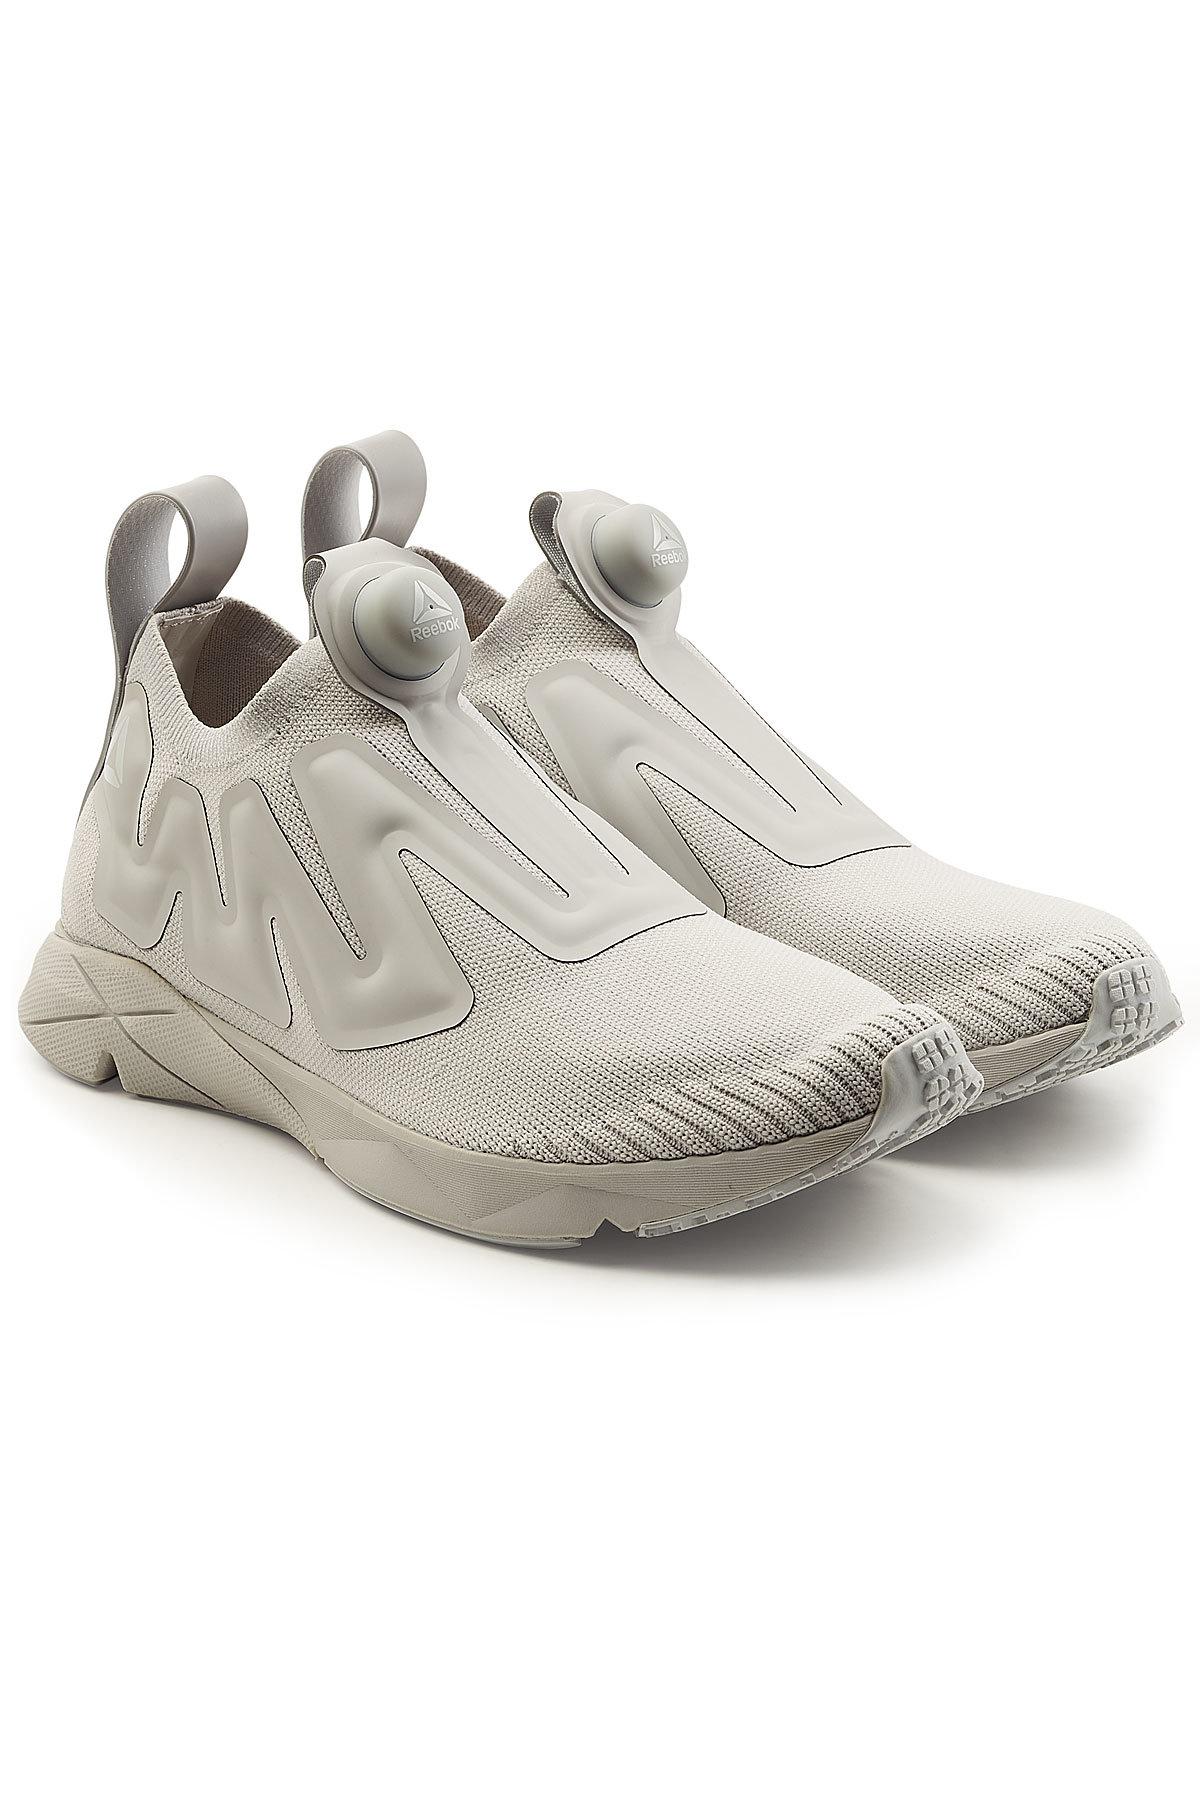 reebok pump supreme sneakers